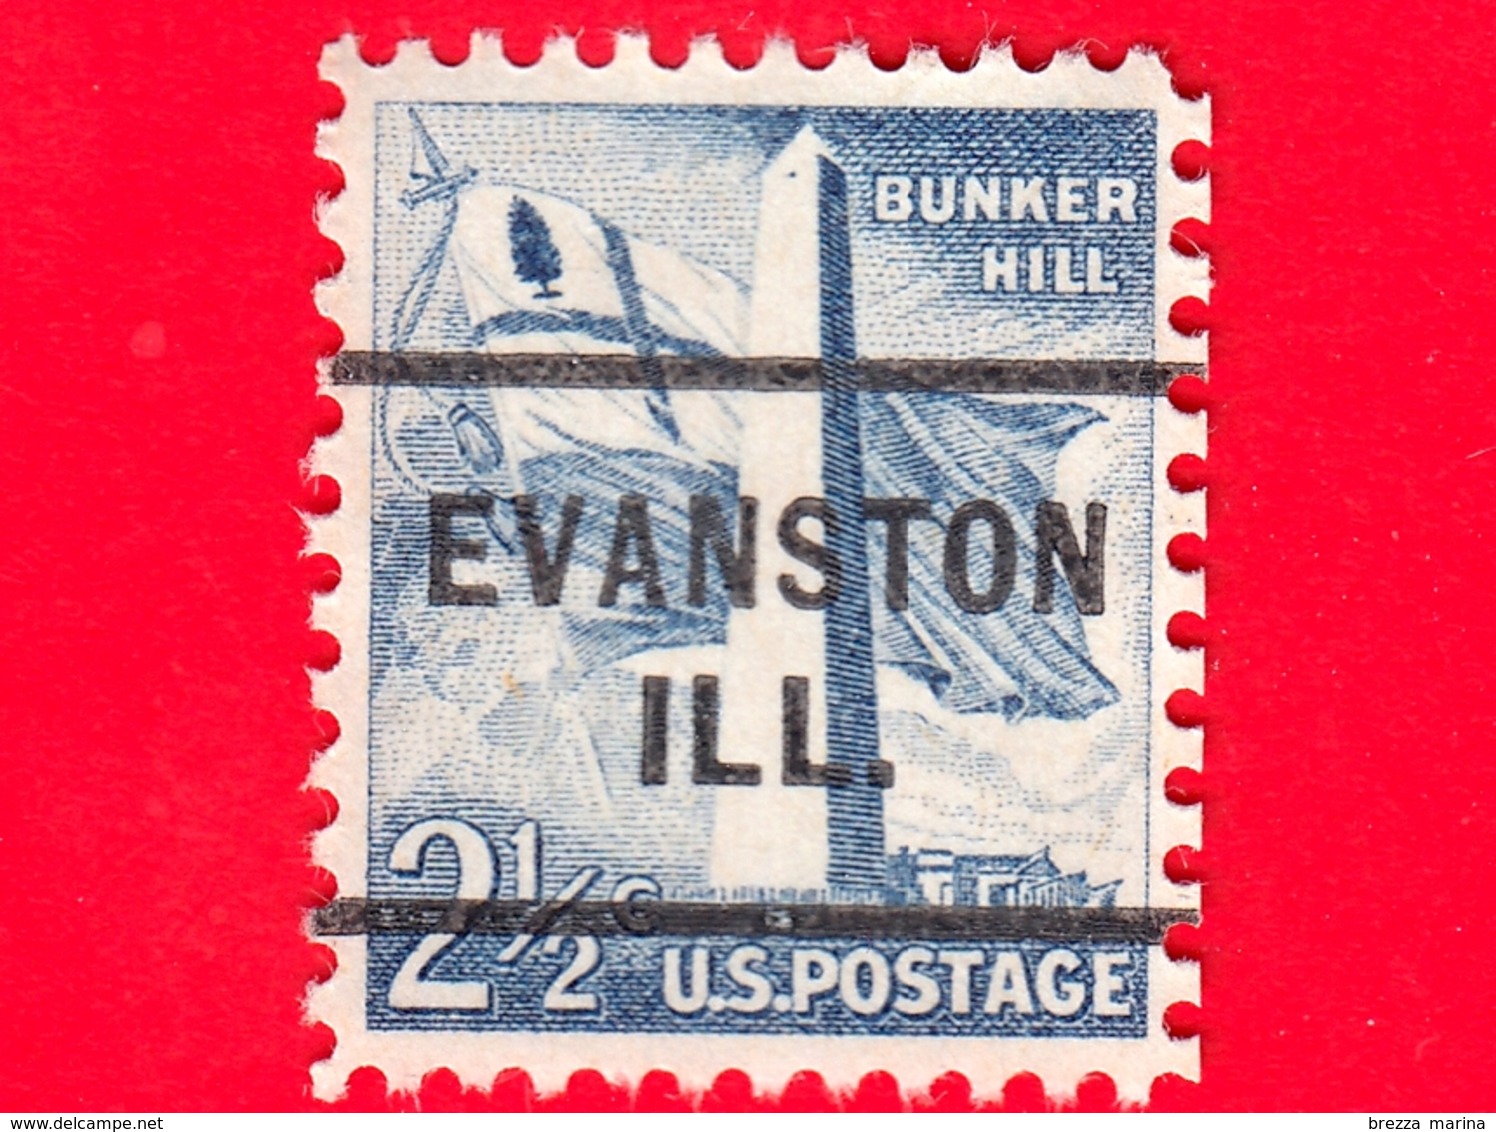 USA - STATI UNITI - Usato - 1959 - Monumento Bunker Hill - Evanston Ill. - 2 ½ - Precancels